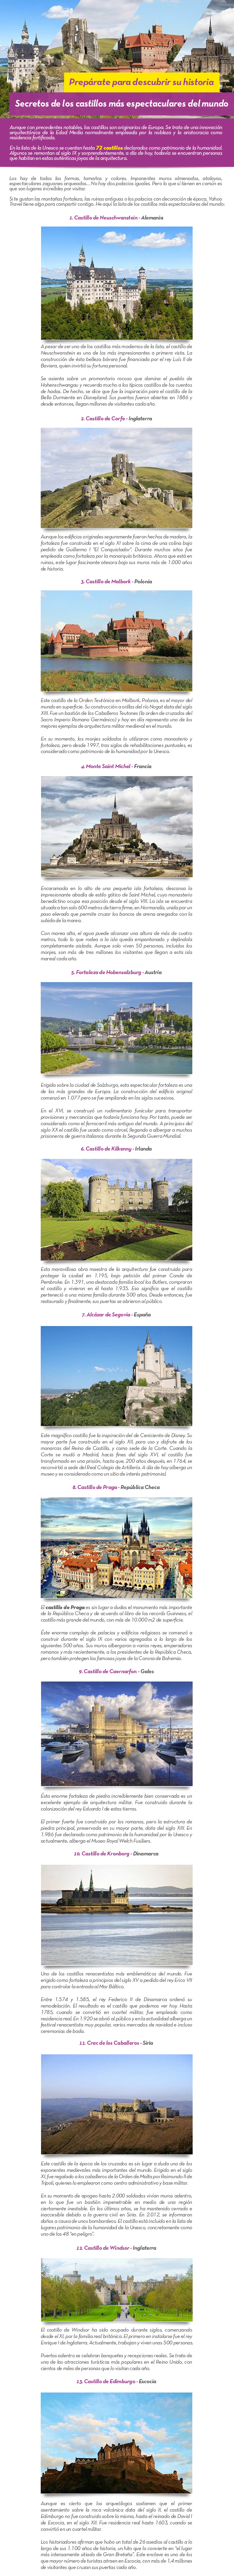 Preprate para descubrir su historia  Secretos de los castillos ms espectaculares del mundo